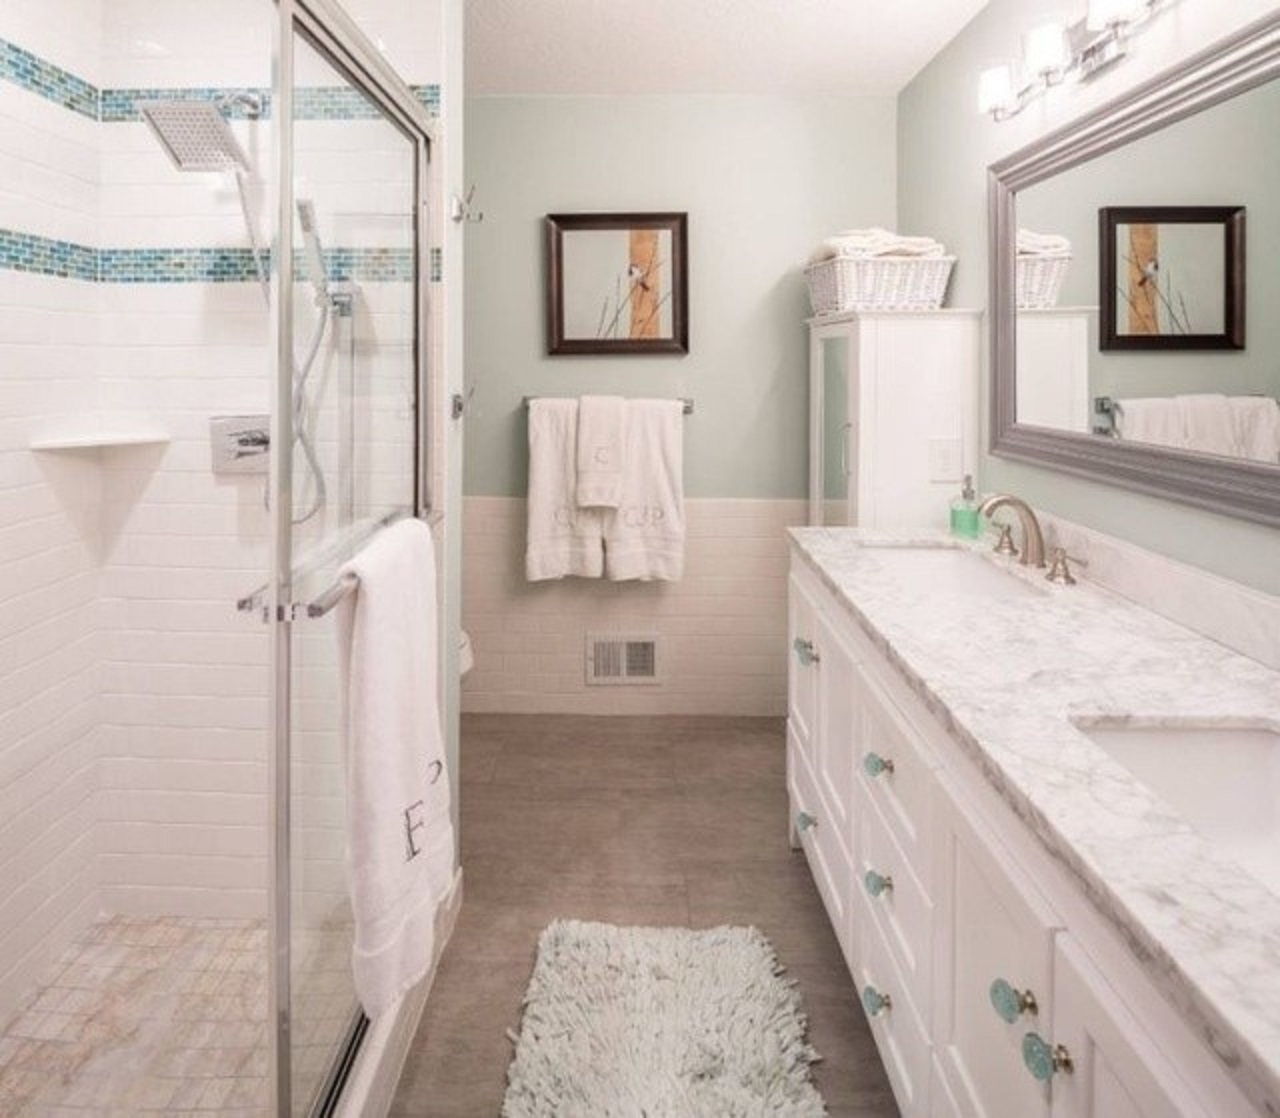 Phòng tắm trung tính và yên bình được làm mới với các điểm nhấn màu ngọc lam cho cảm giác sang trọng và êm dịu.